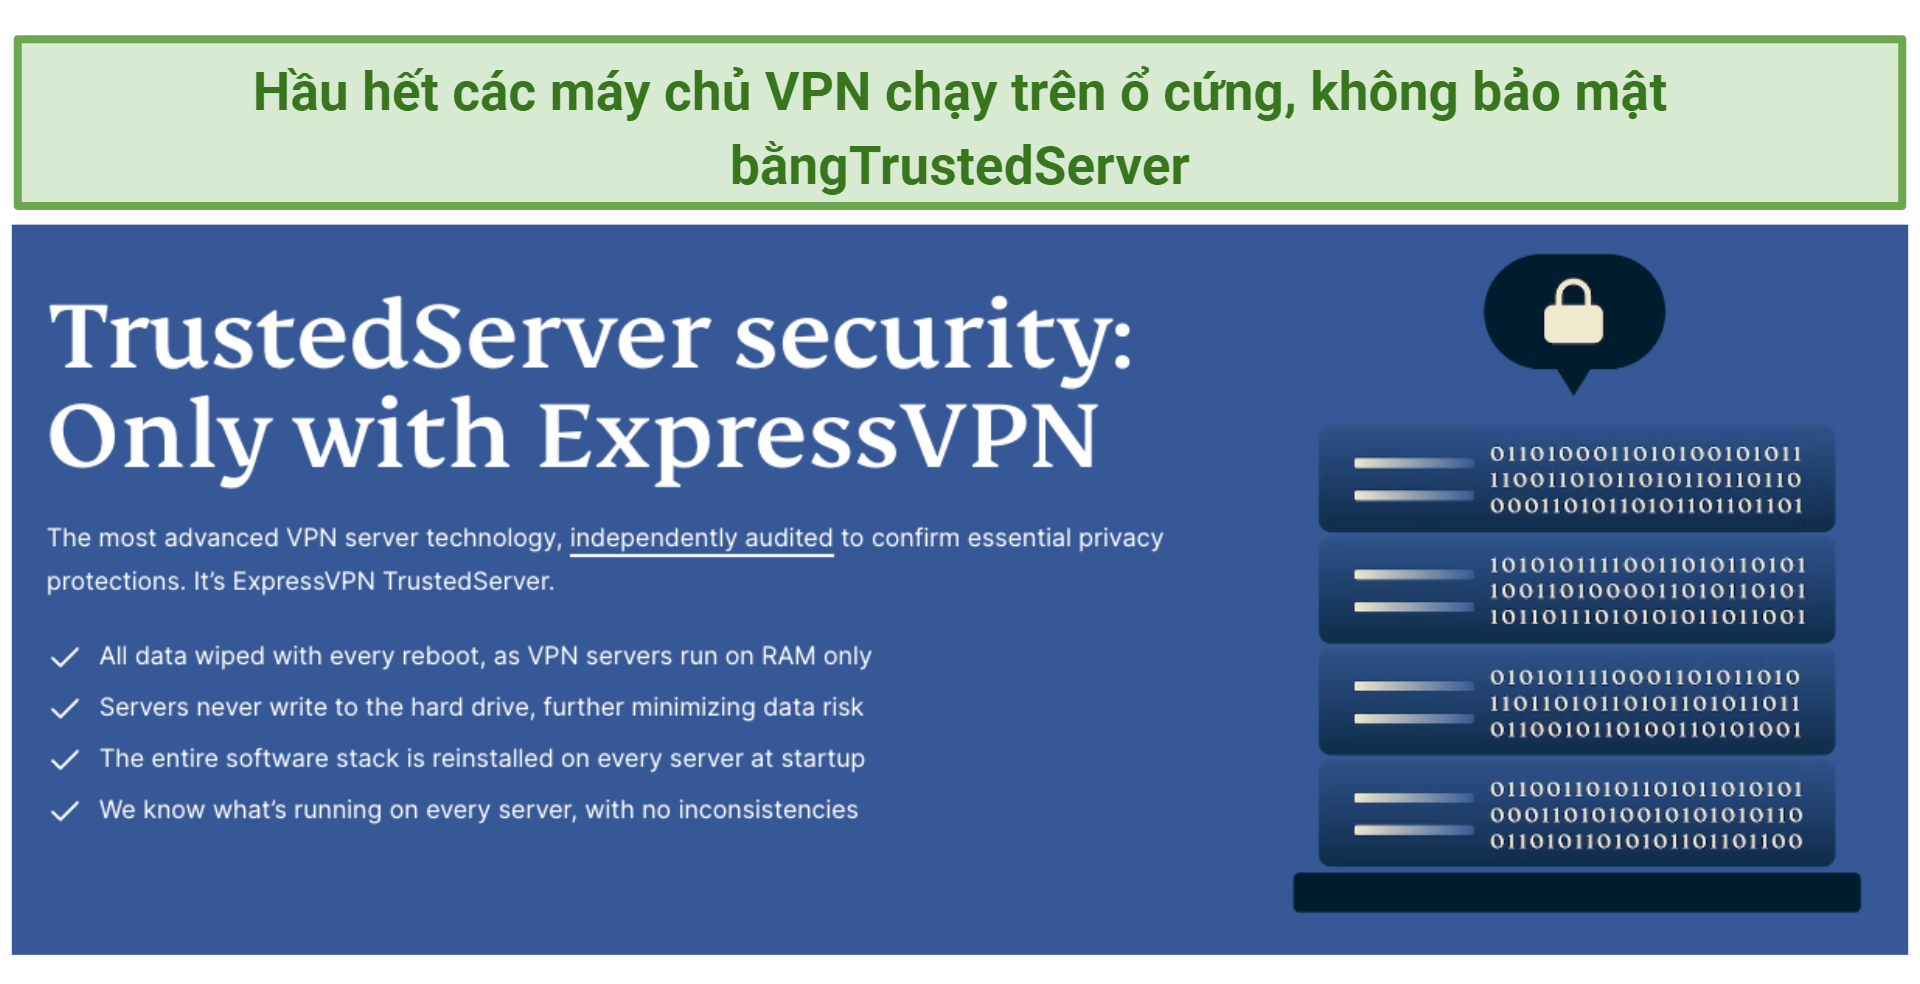 Screenshot showing ExpressVPN's TrustedServer Technology webpage on its website.